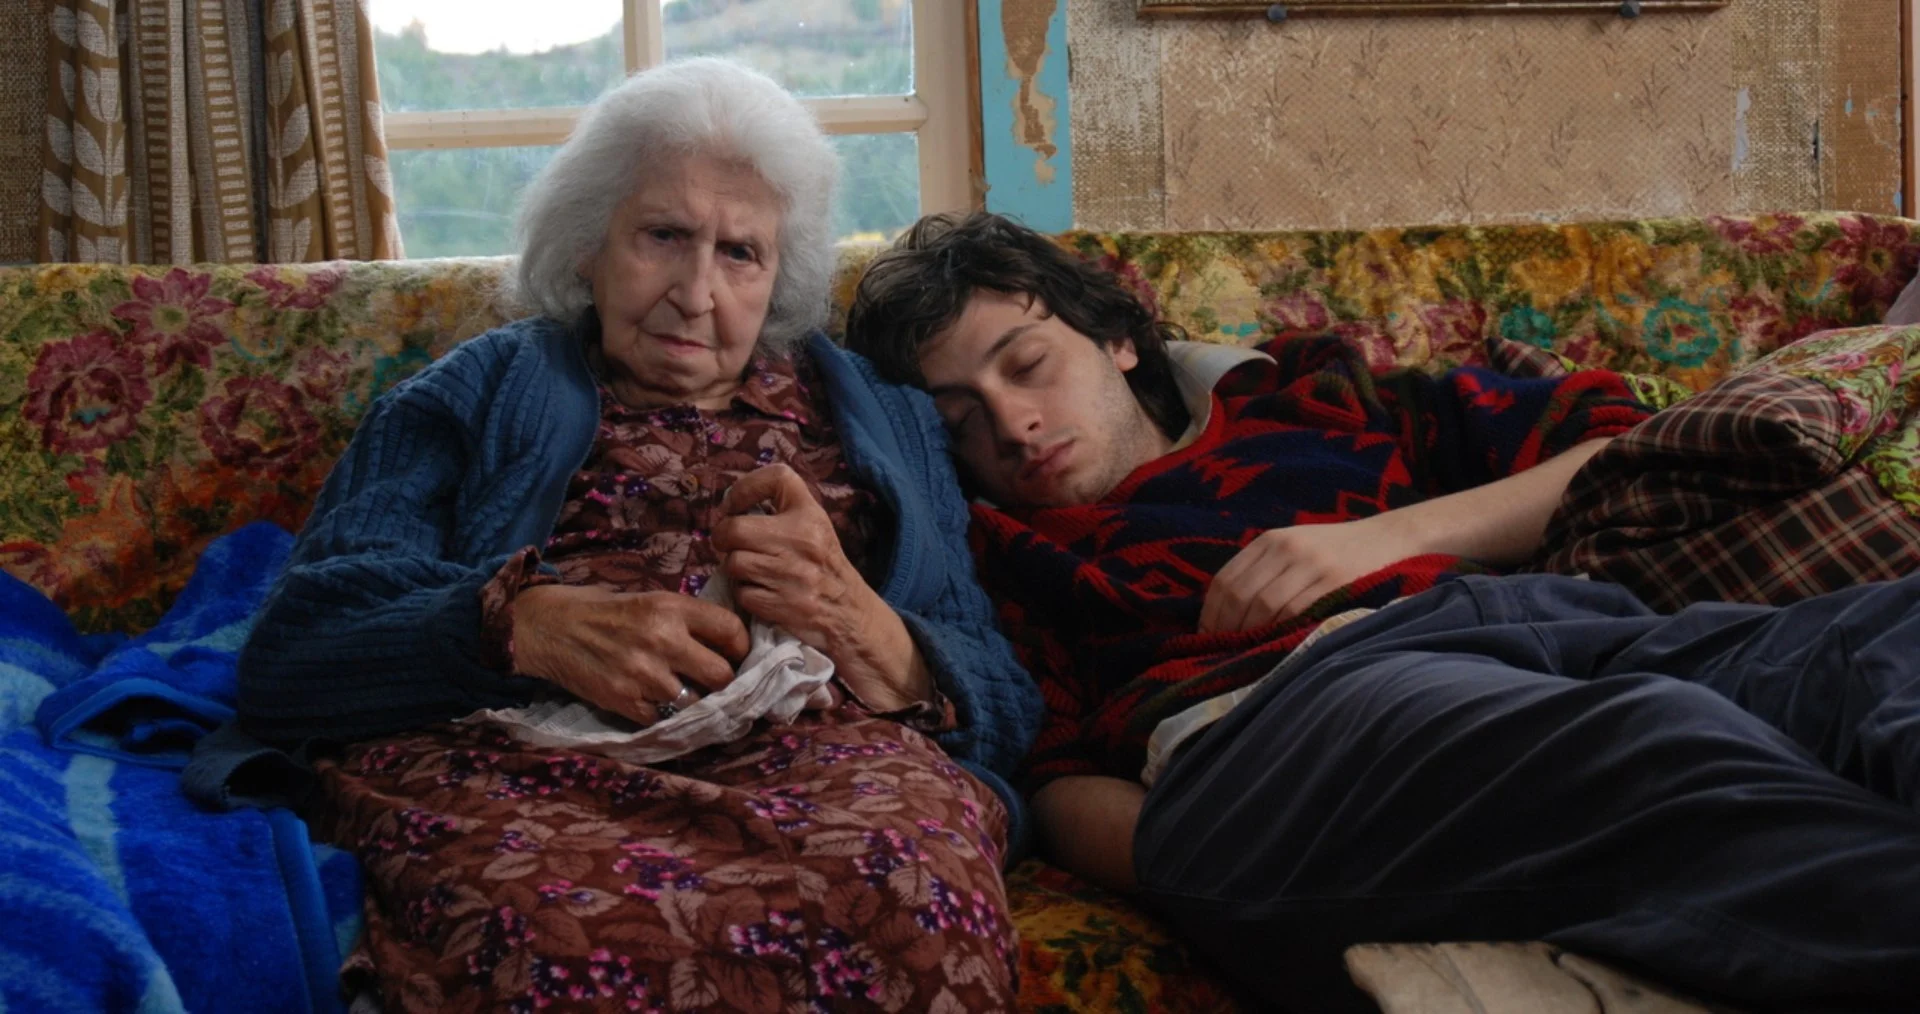 10 современных турецких фильмов: драмы о поиске смысла жизни, одиночестве и конфликтах поколений - фото 9